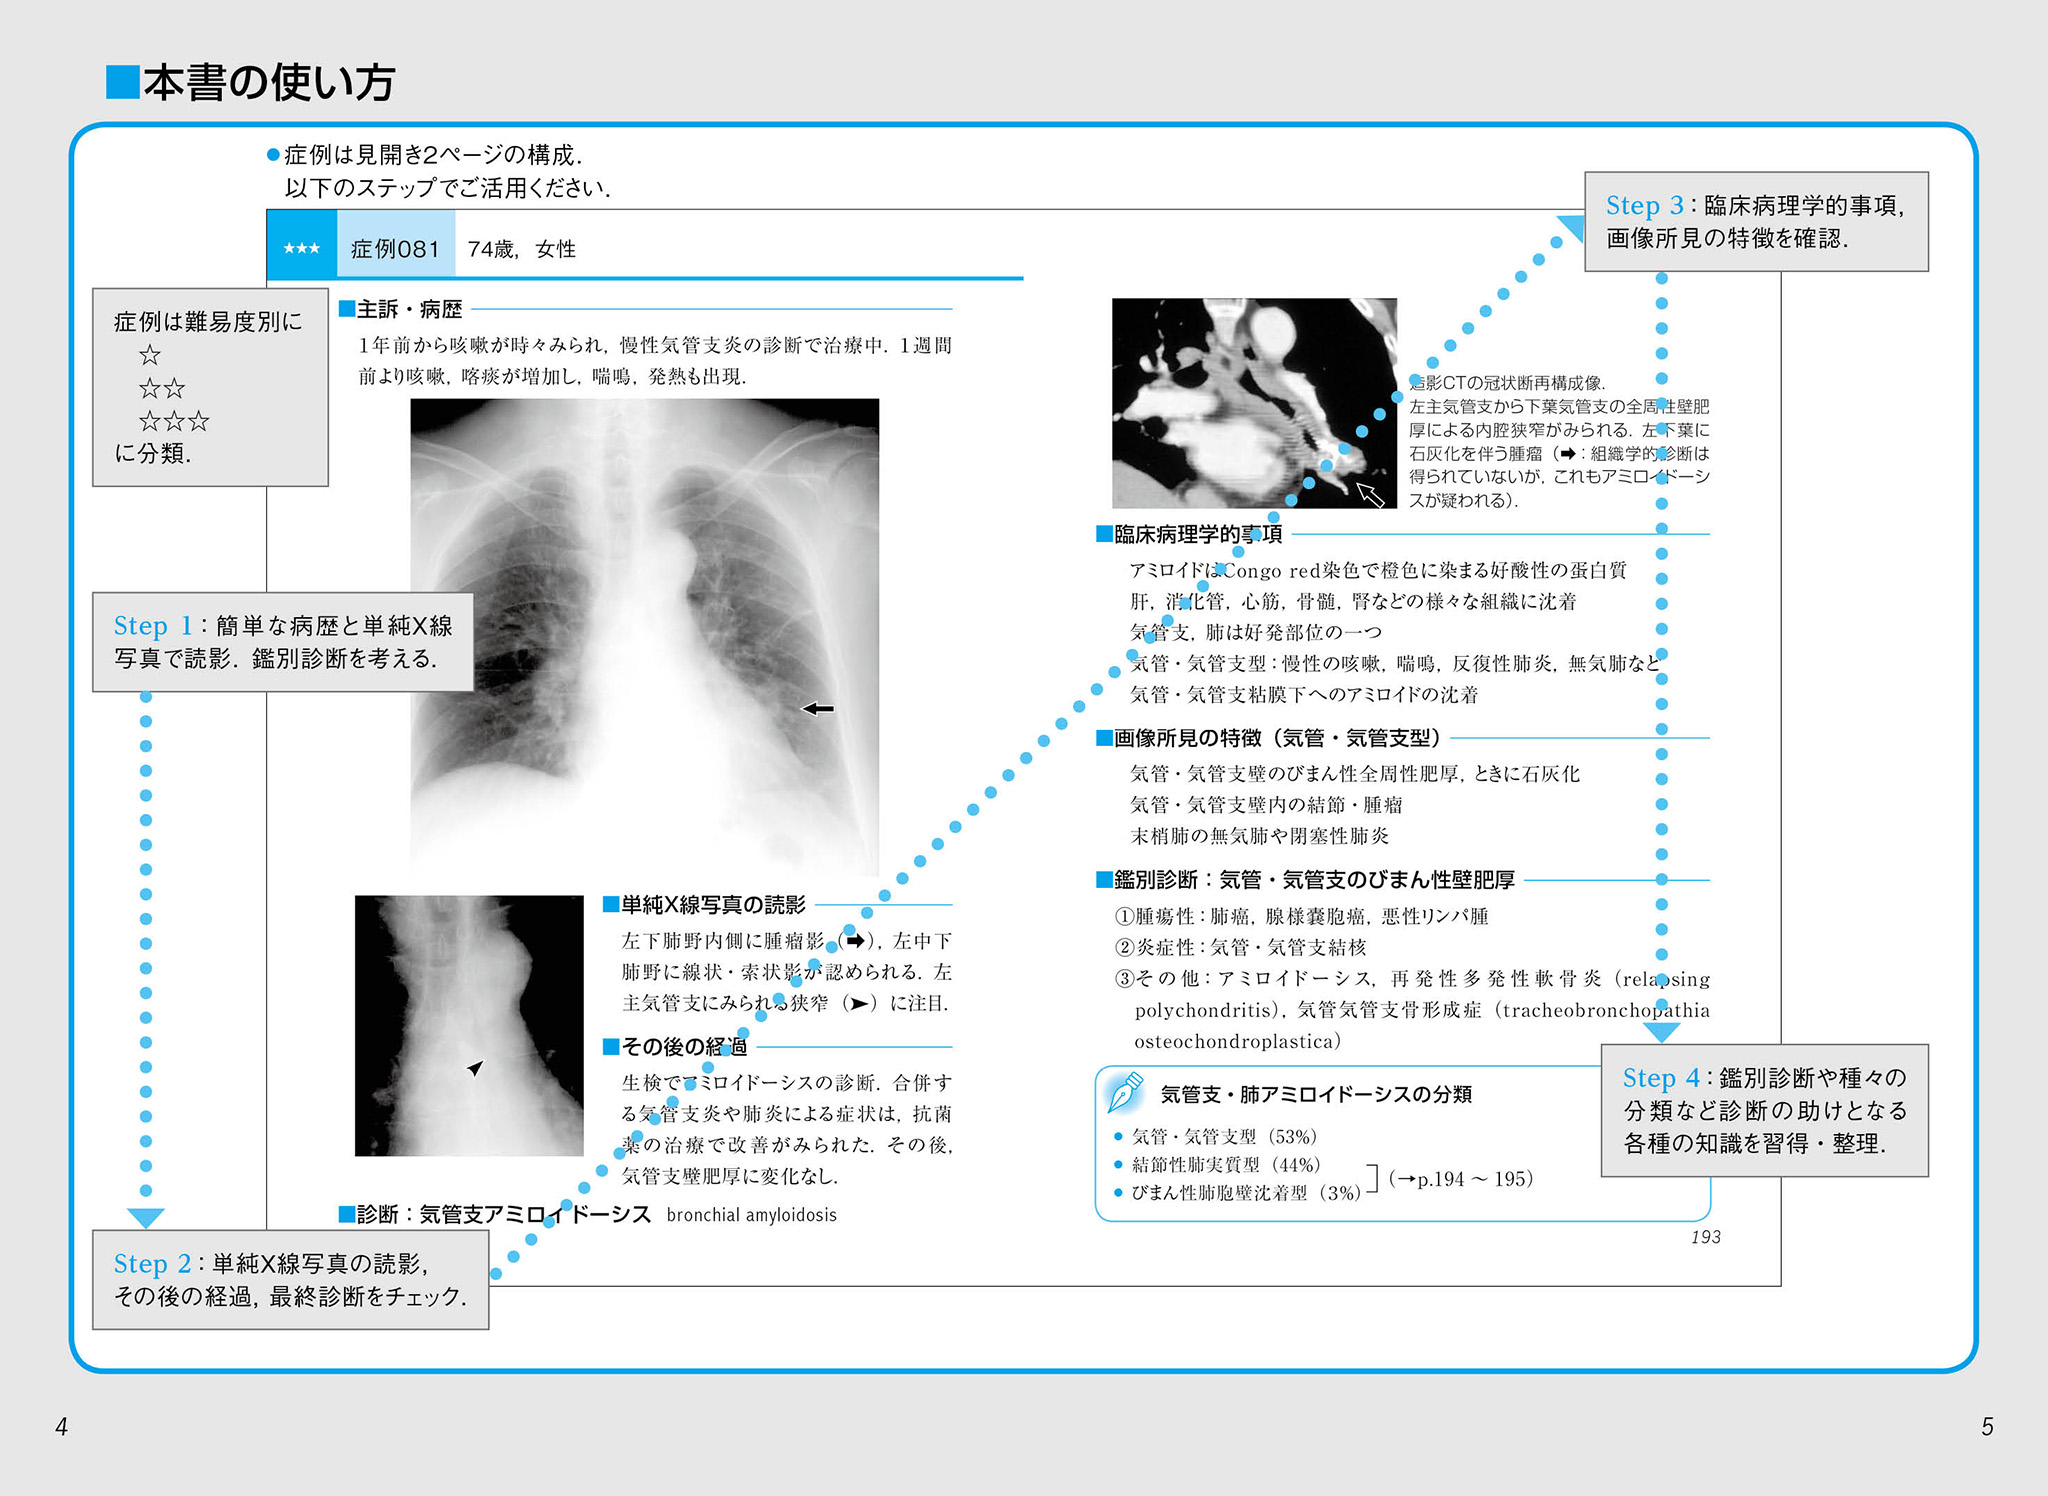 コンパクトX線シリーズBasic 胸部単純X線写真アトラス vol.1 肺 本書の使い方